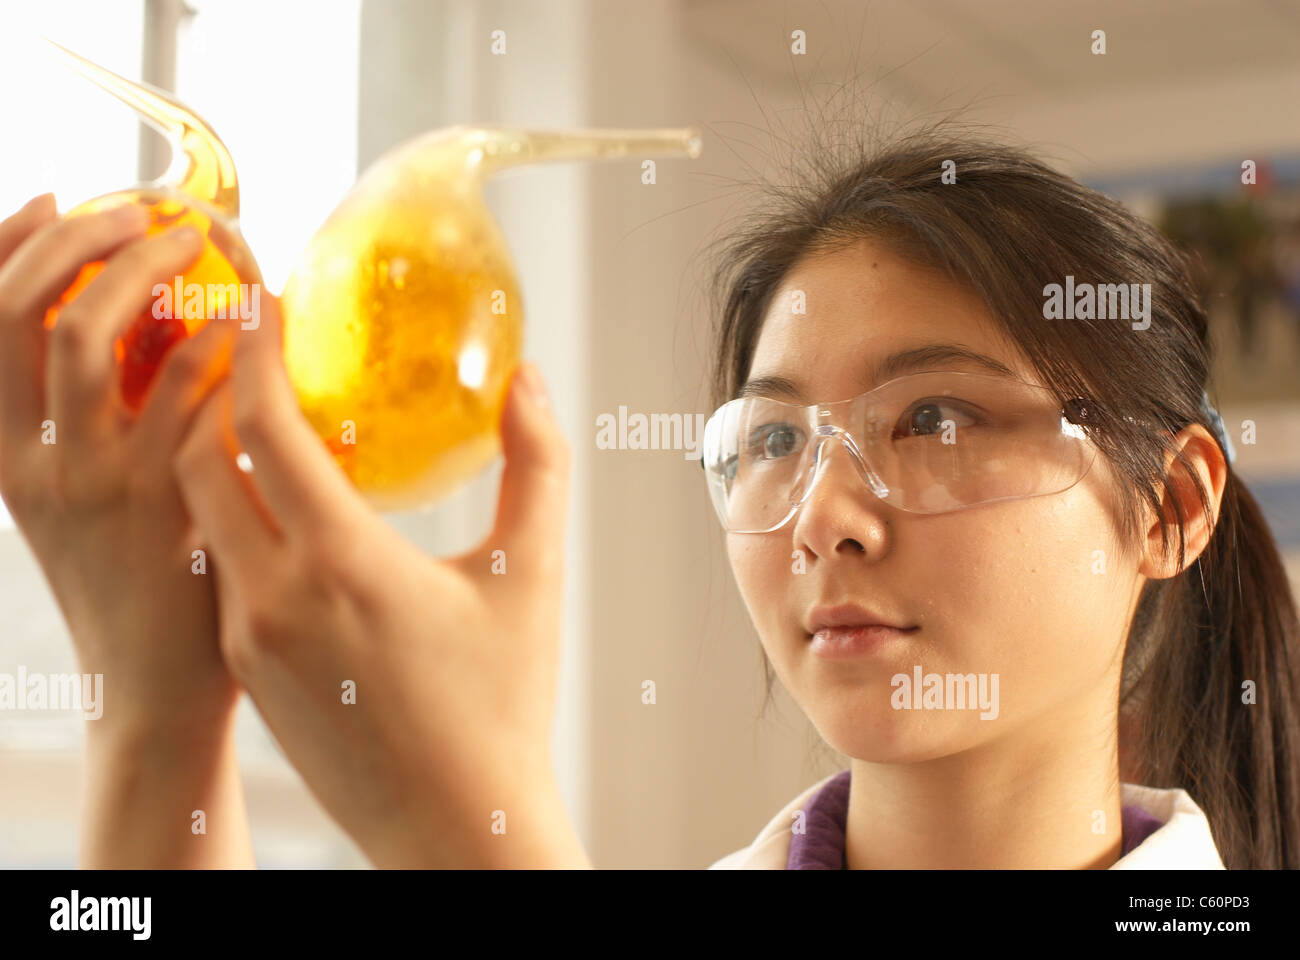 Scientist examining liquid in beakers Stock Photo